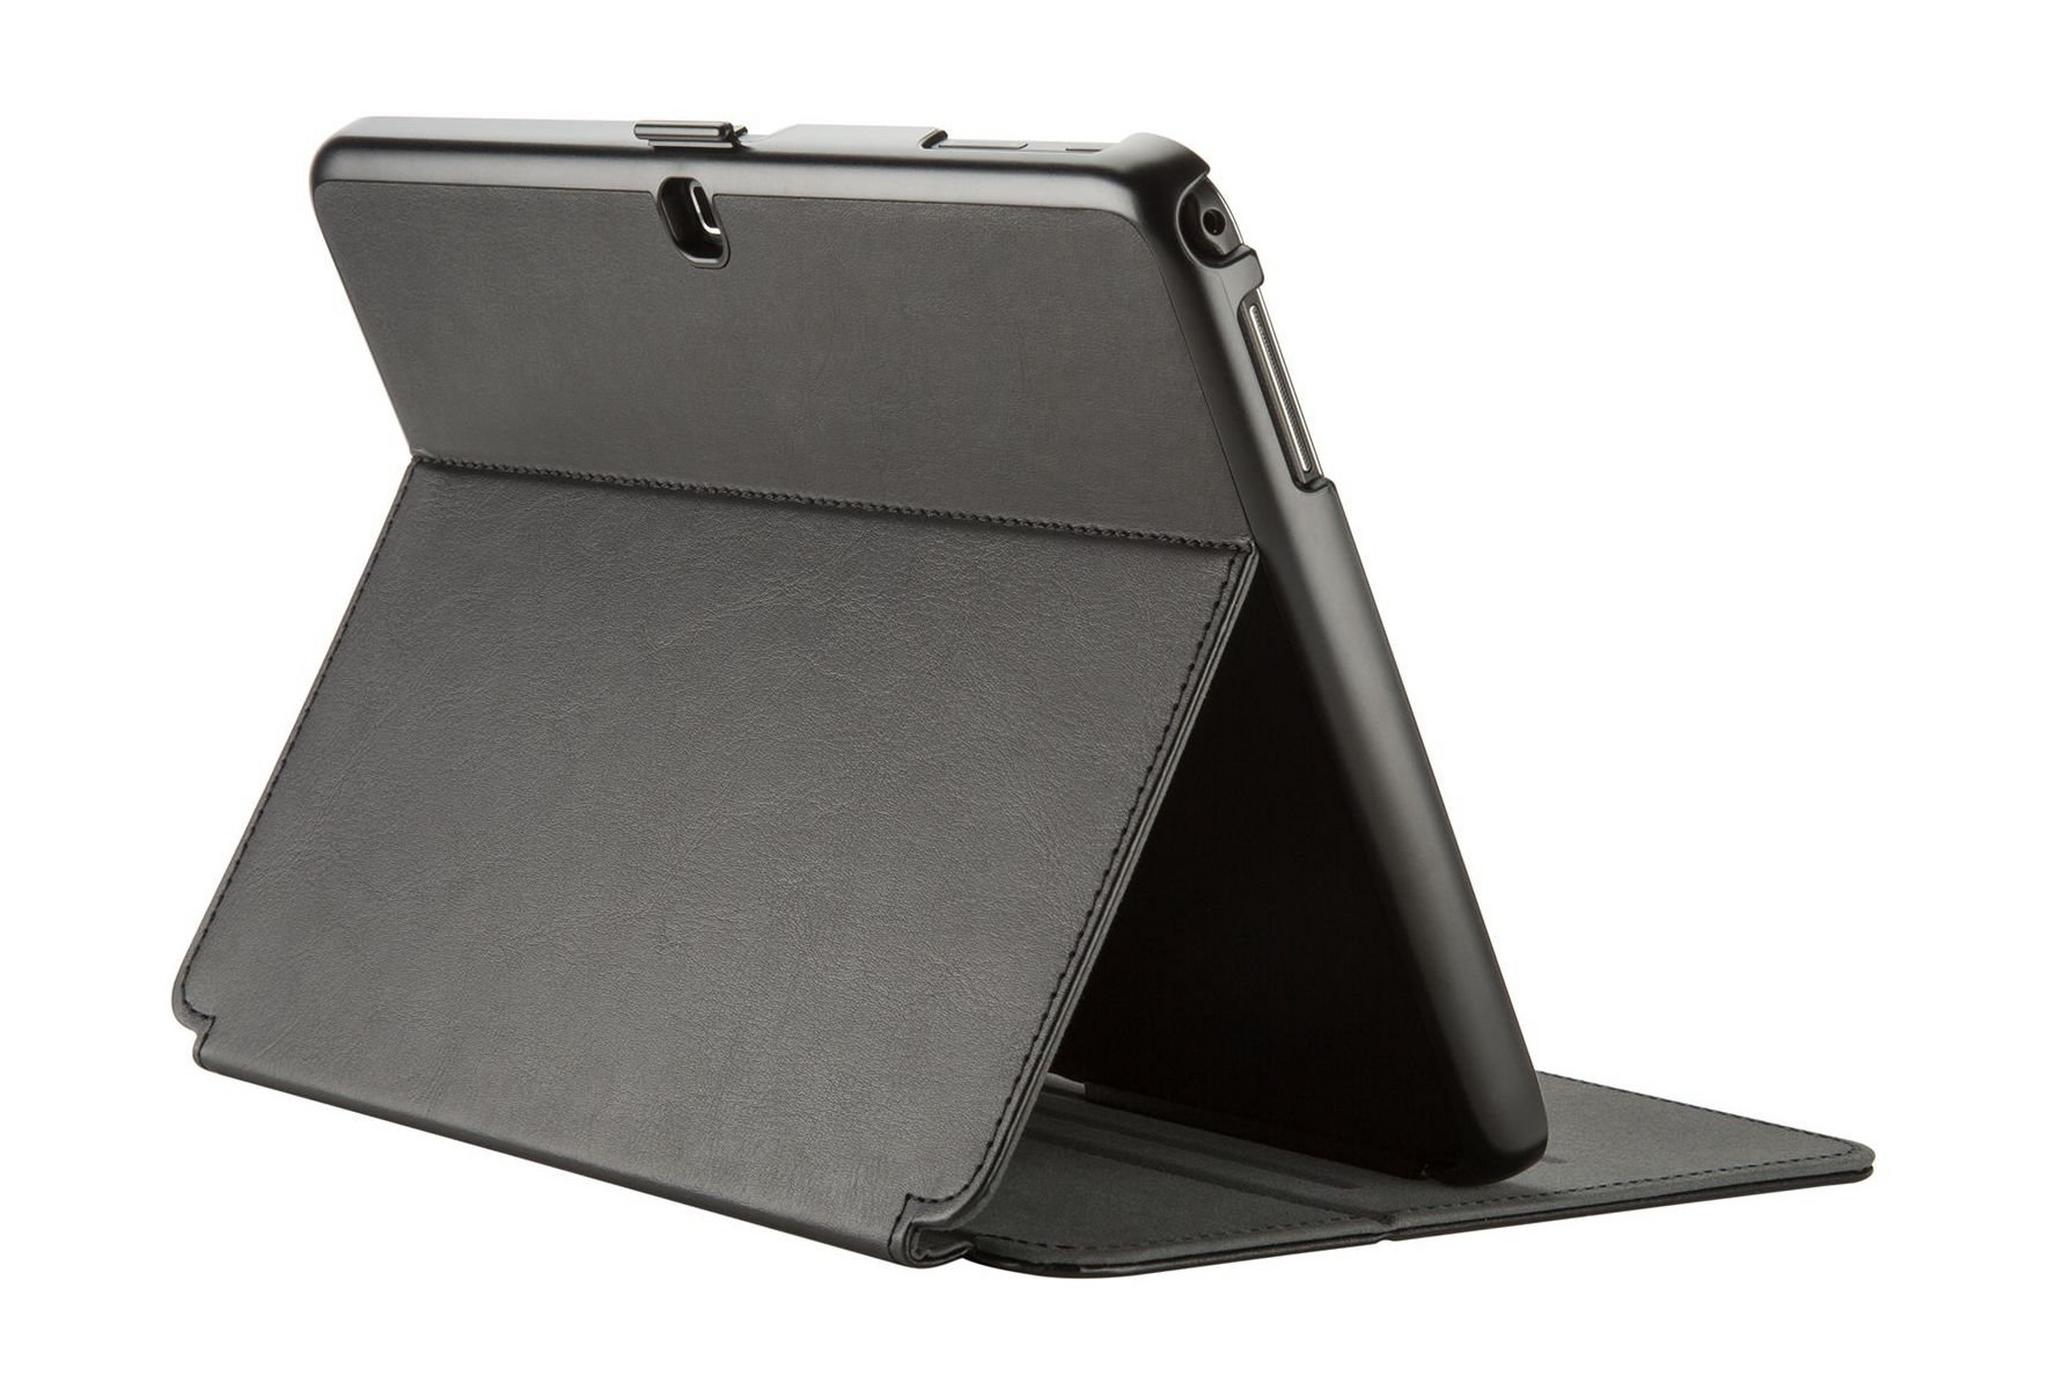 Speck Style Folio Case For Galaxy Tab A 10.1-inch – Black